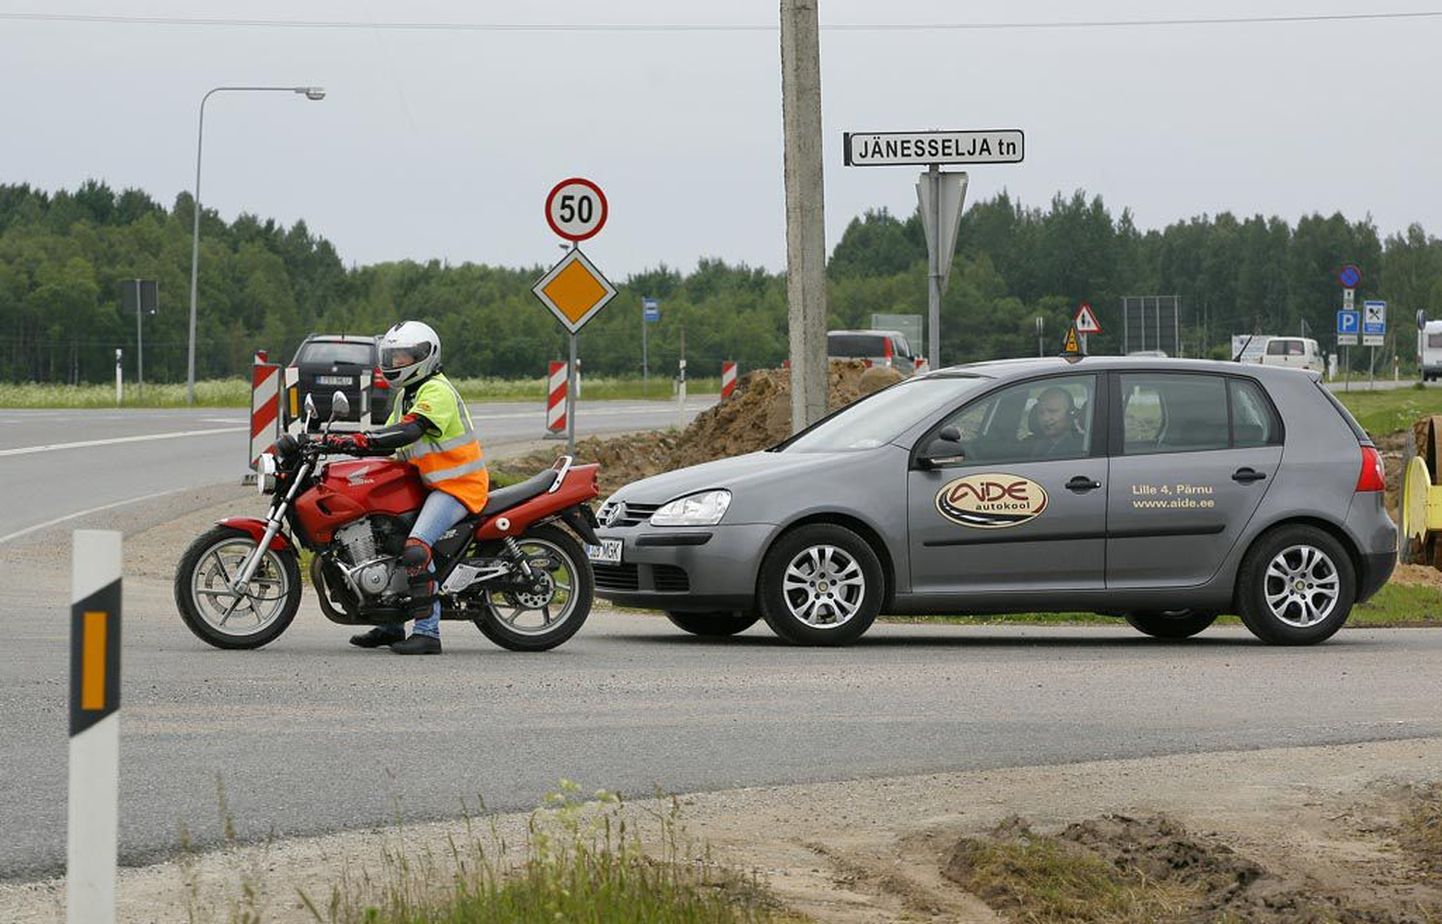 Sauga alevikus algas ringristmiku ehitamine Tallinna-Pärnu maanteel, et väljasõit Jänesselja poolt oleks ohutu.